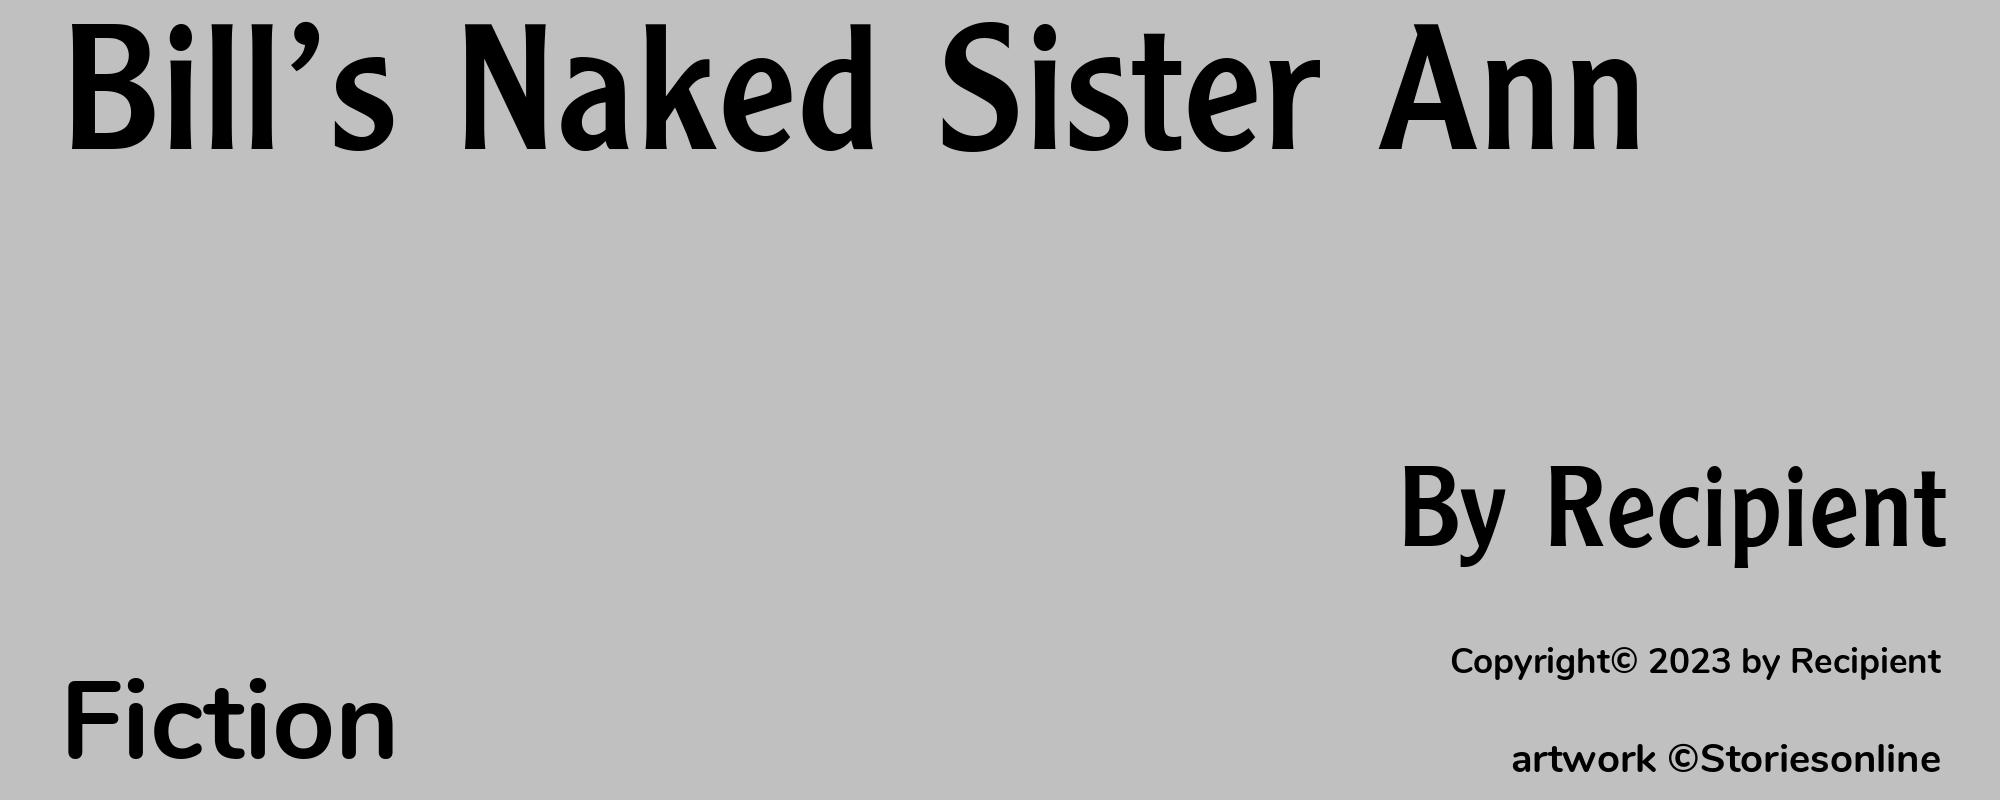 Bill’s Naked Sister Ann - Cover